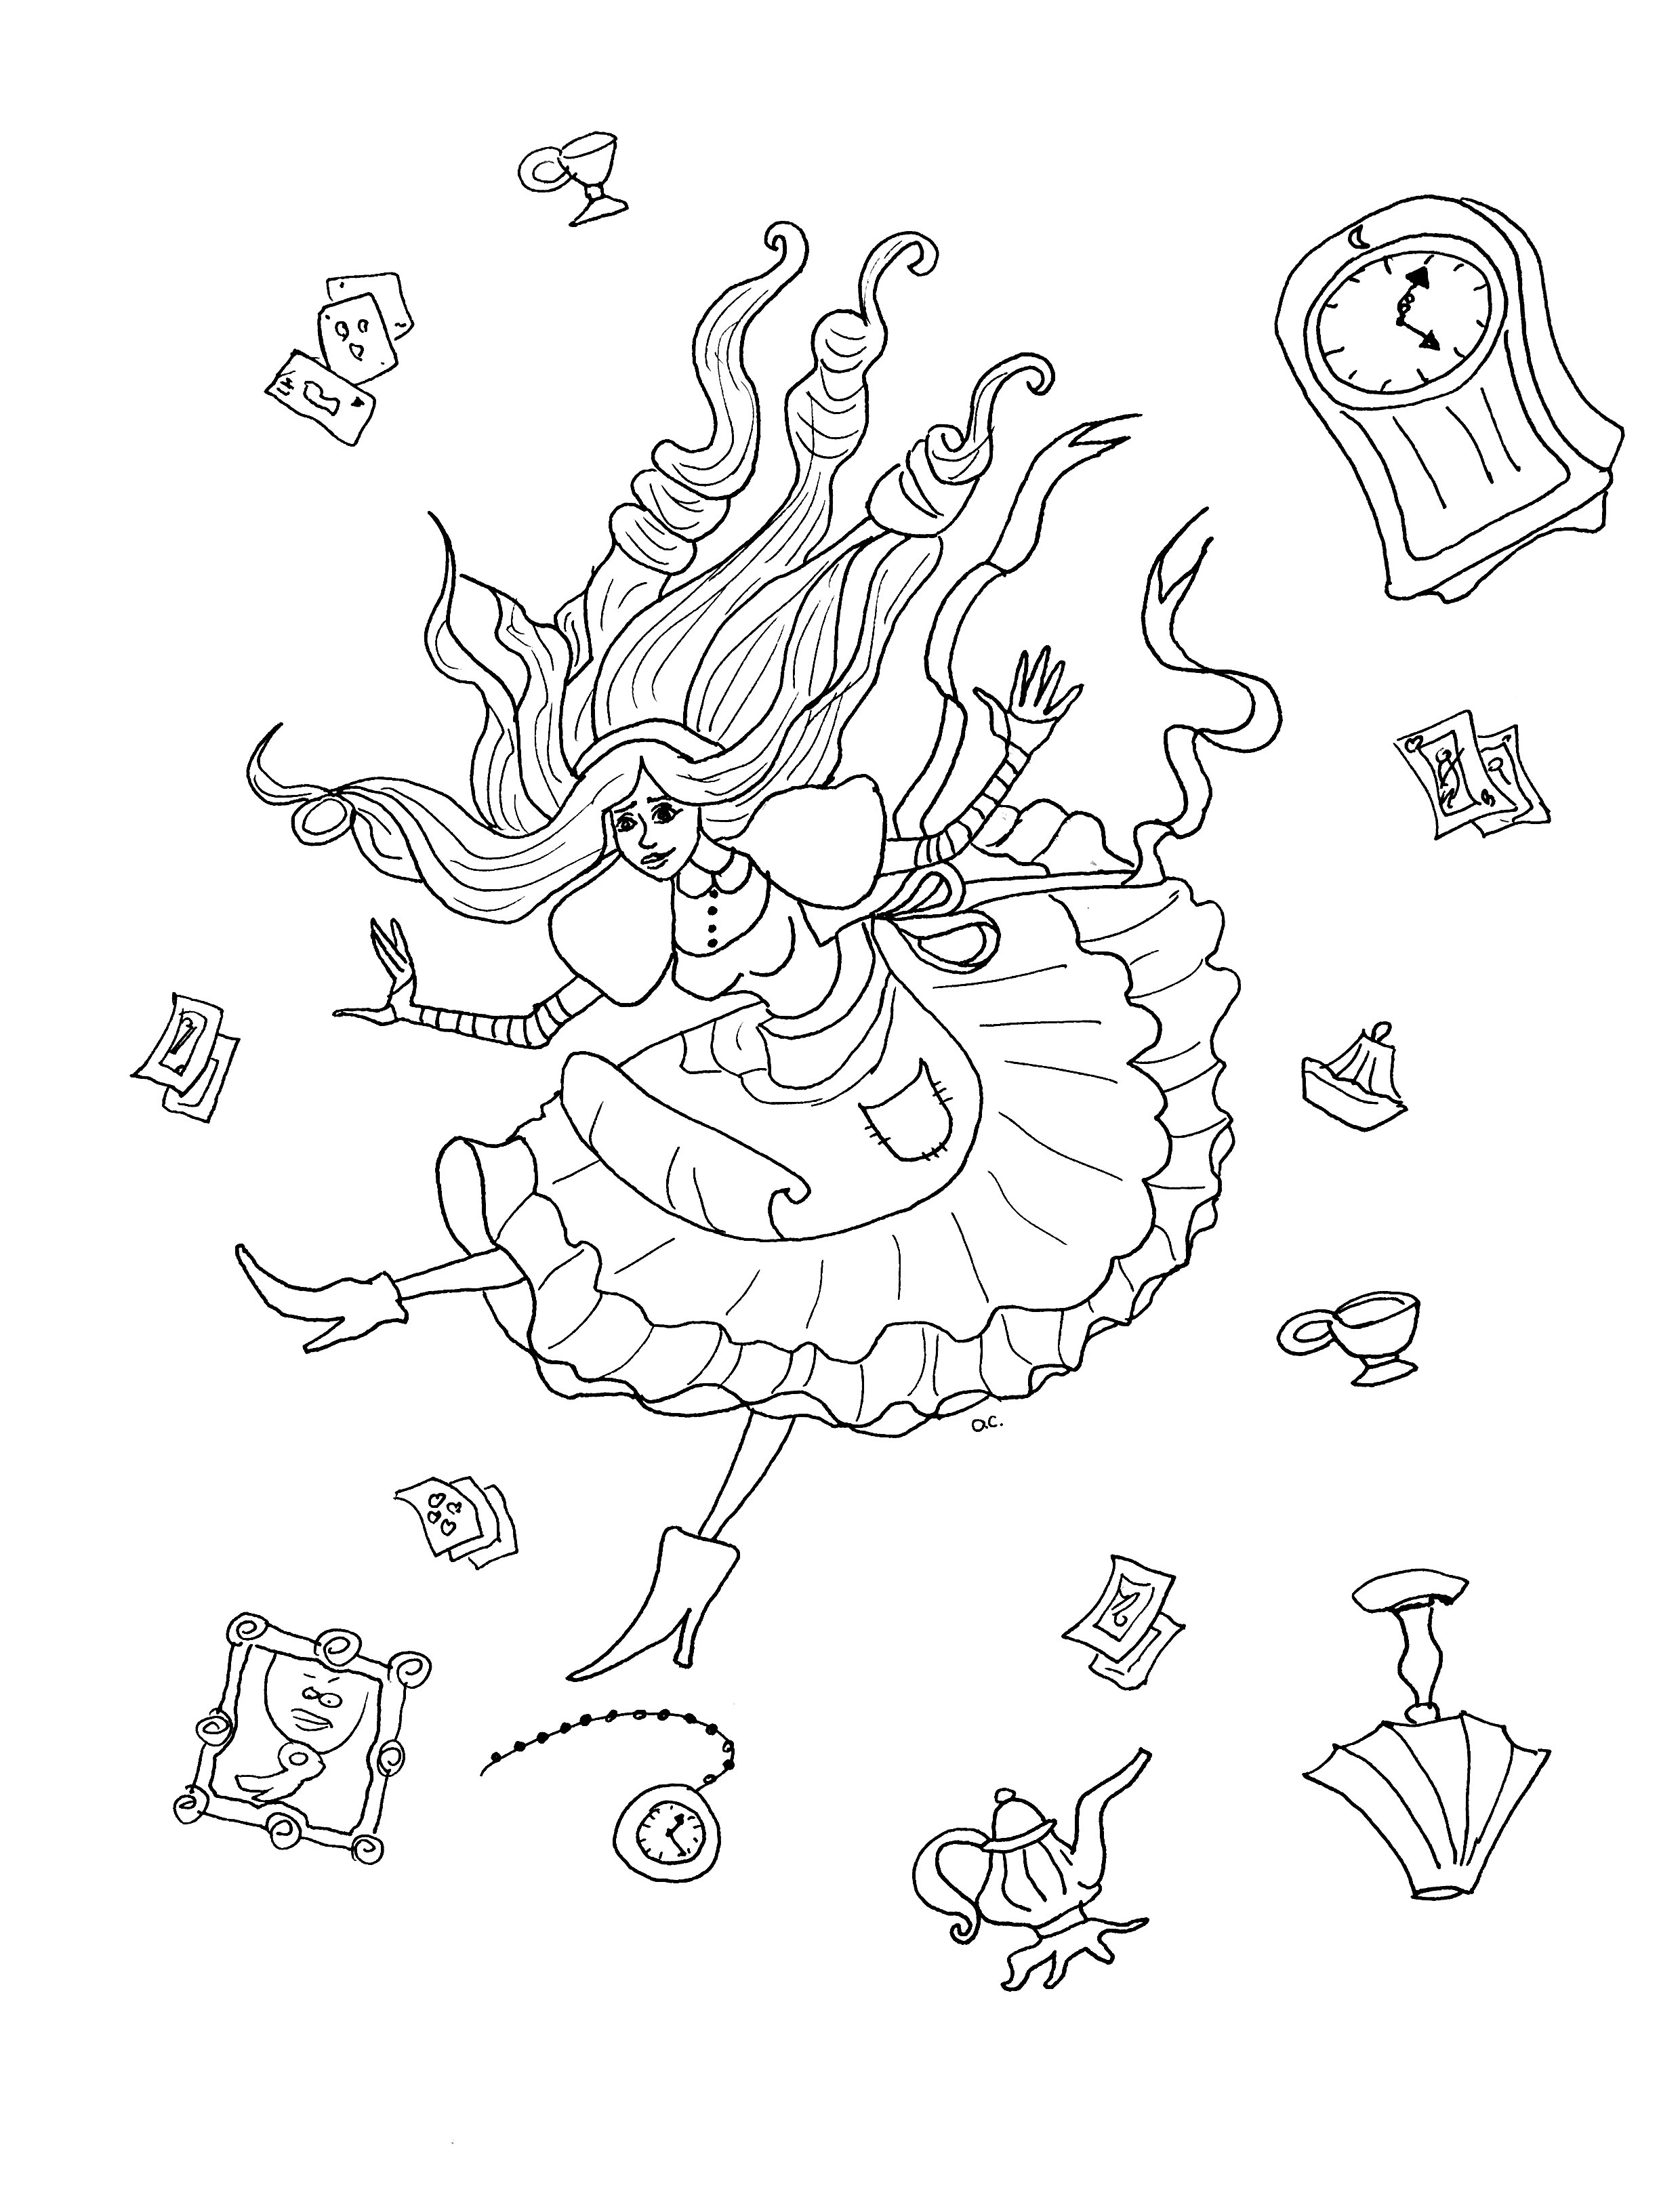 Pagina originale da colorare ispirata ad Alice nel Paese delle Meraviglie (versione 2 con oggetti), Artista : Olivier